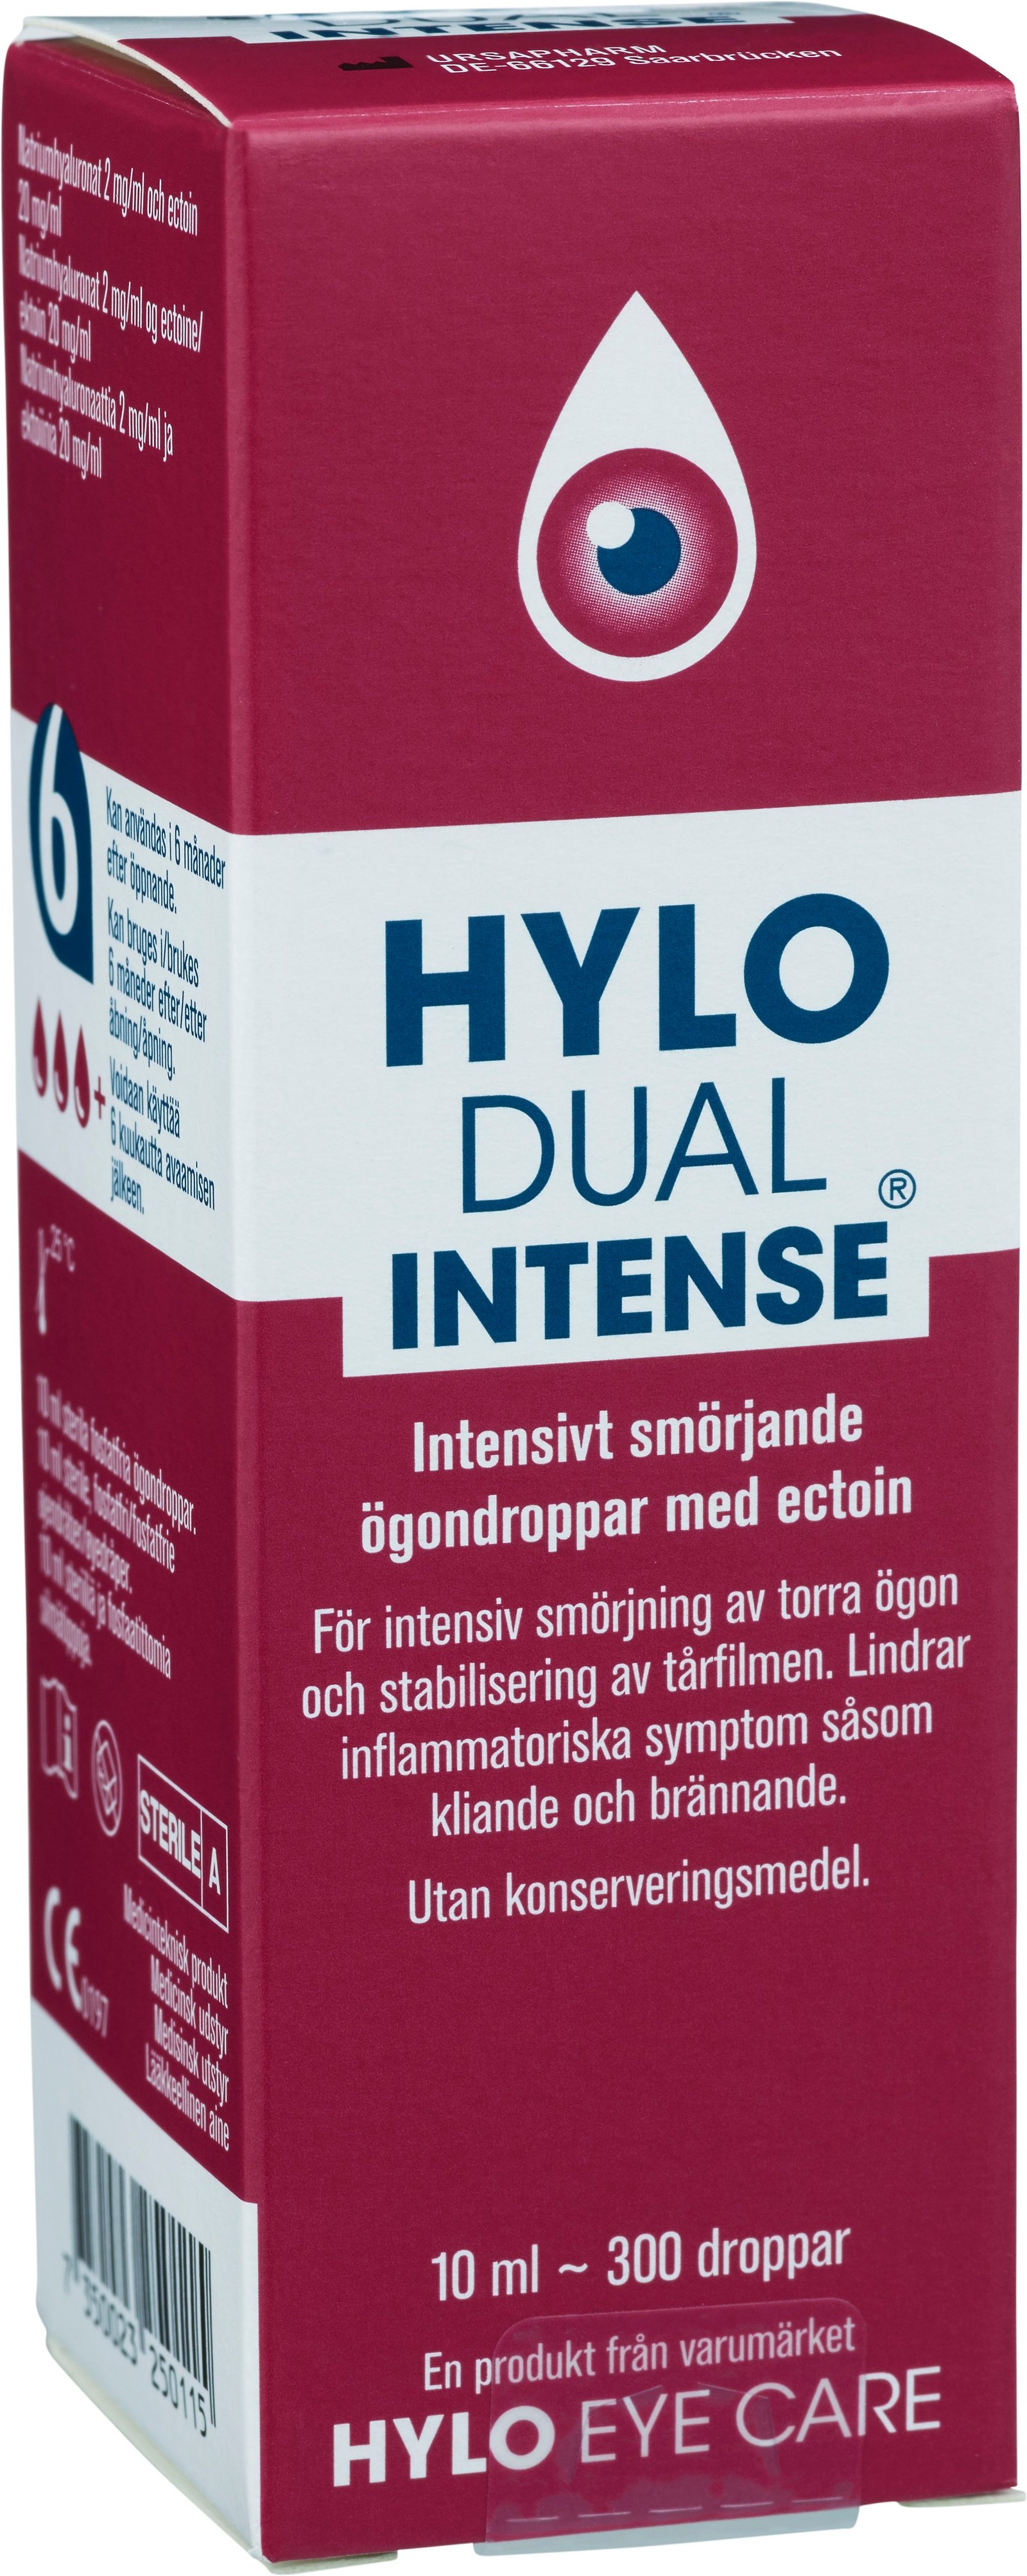 Hylo Dual Intense Smörjande Ögondroppar 10 ml